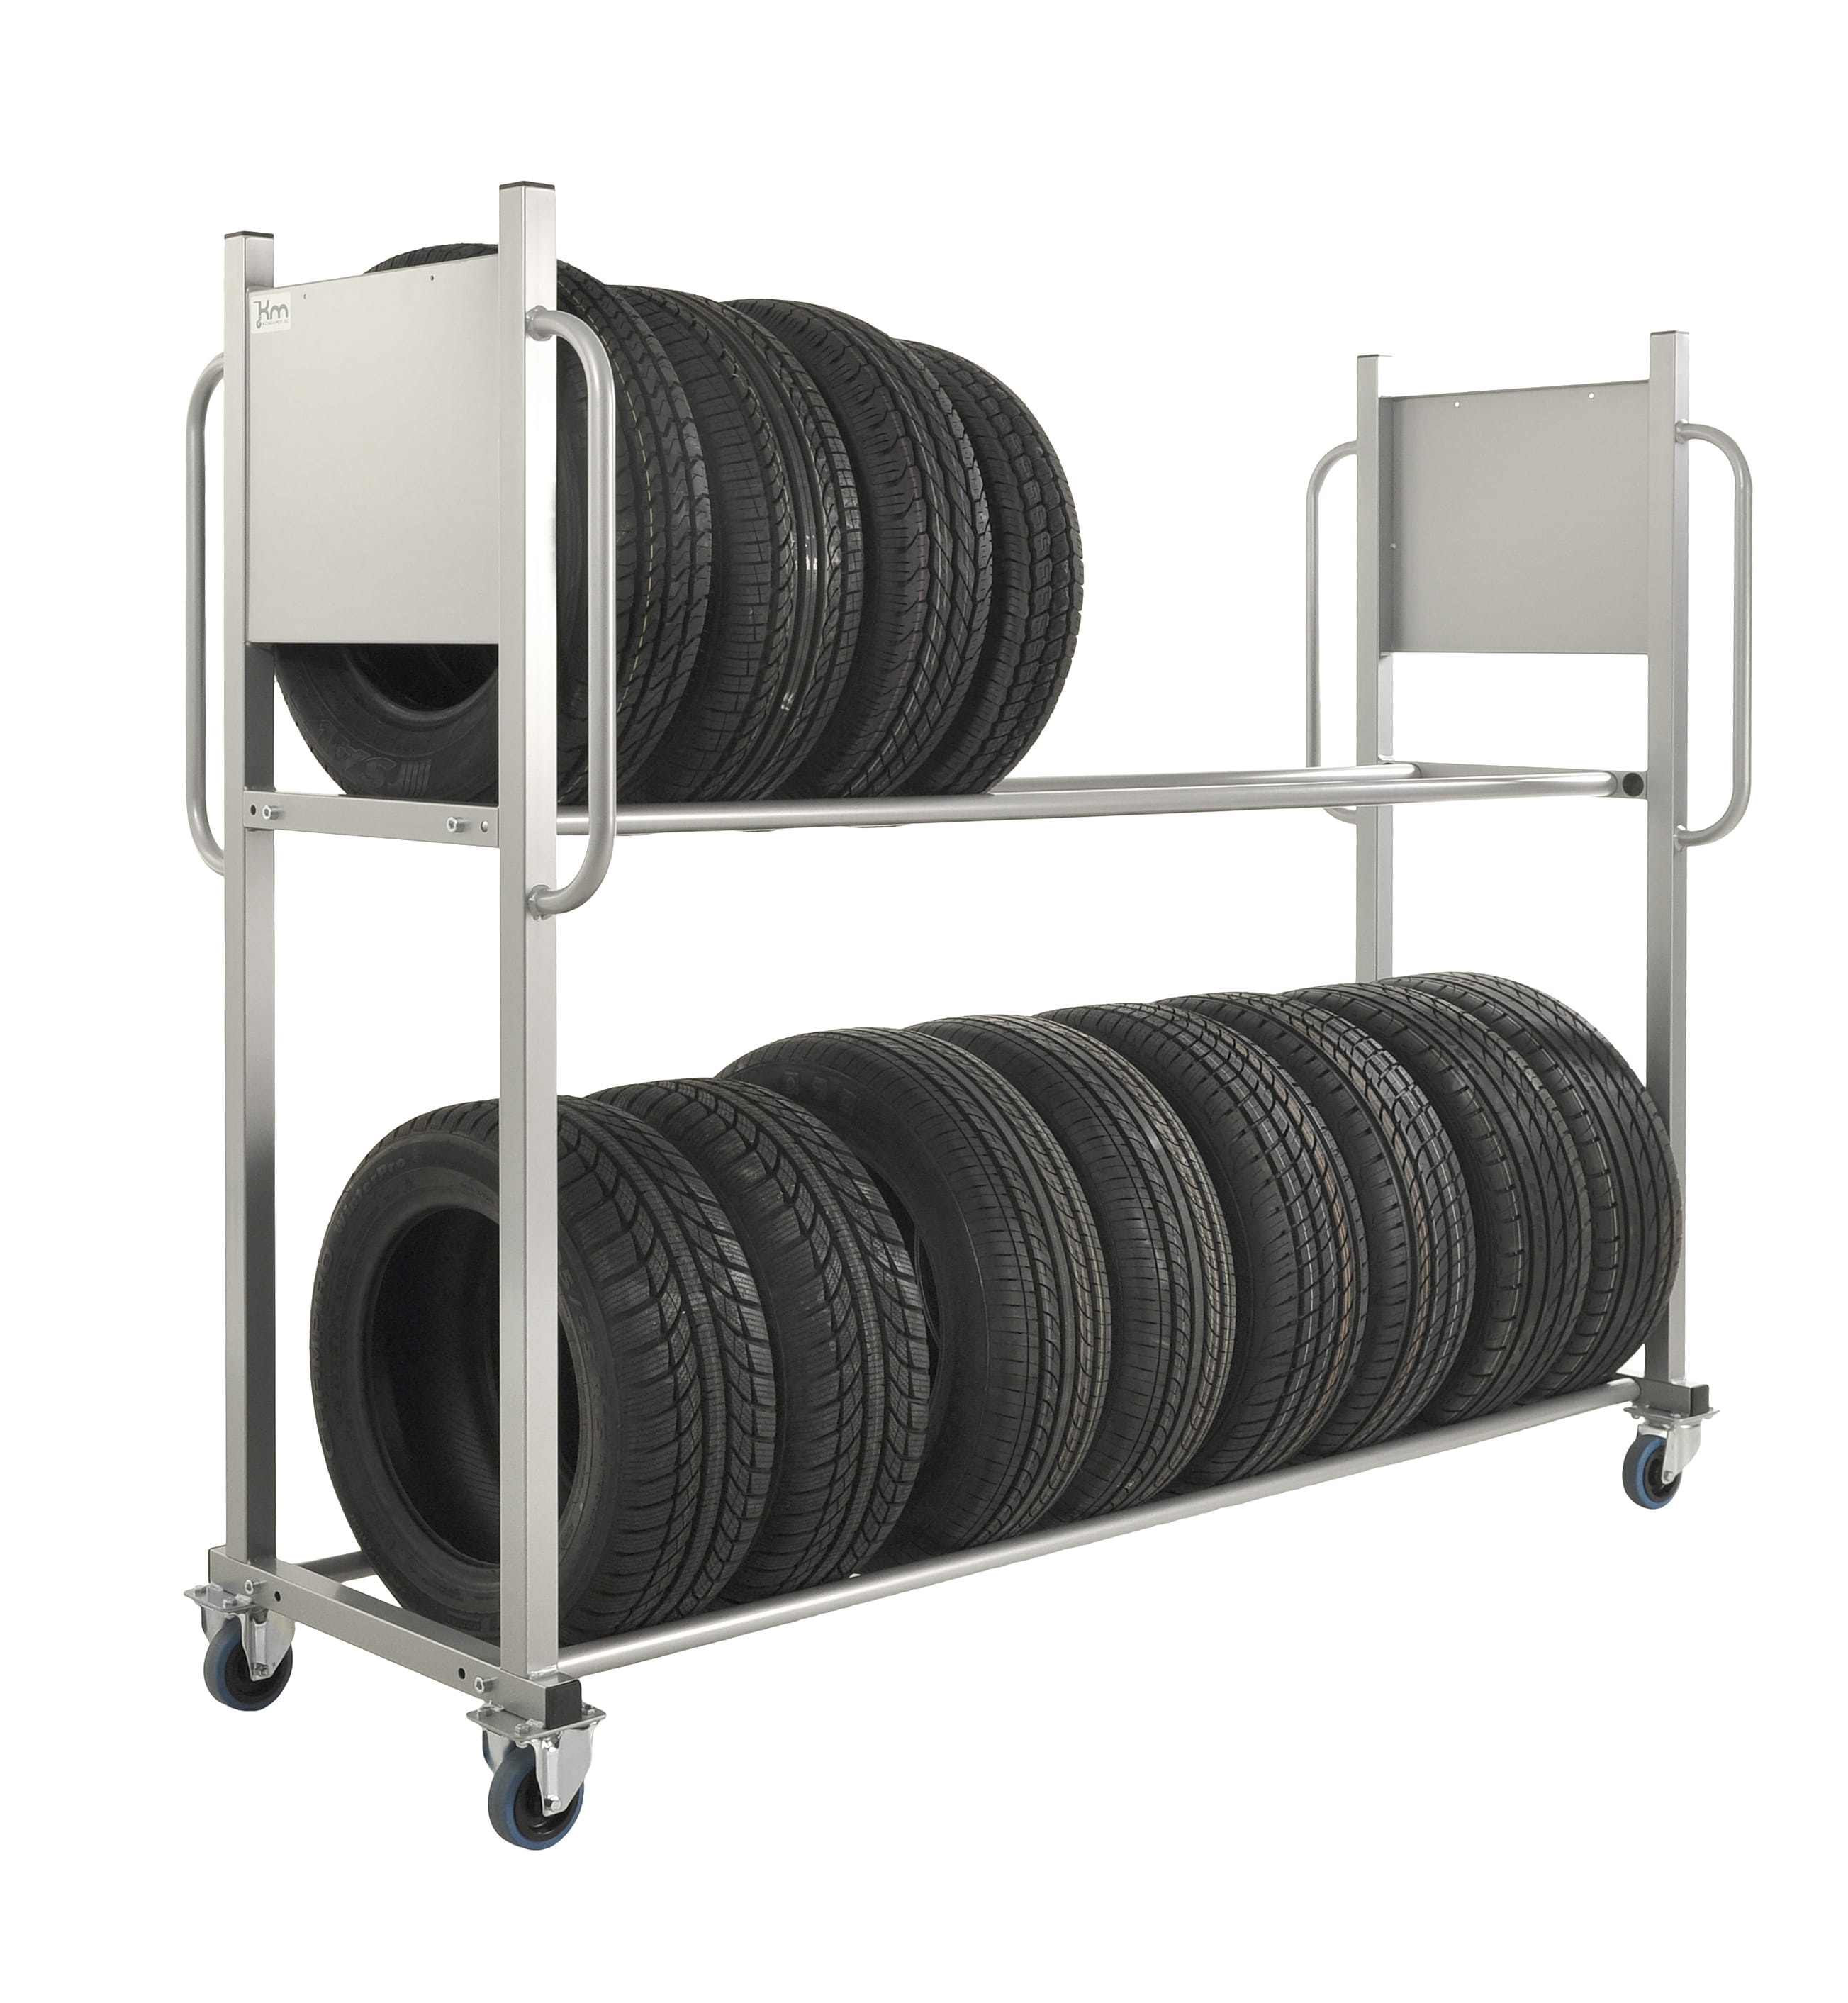 Reifentransportwagen Reifenregal für 16 Reifen- 300 kg